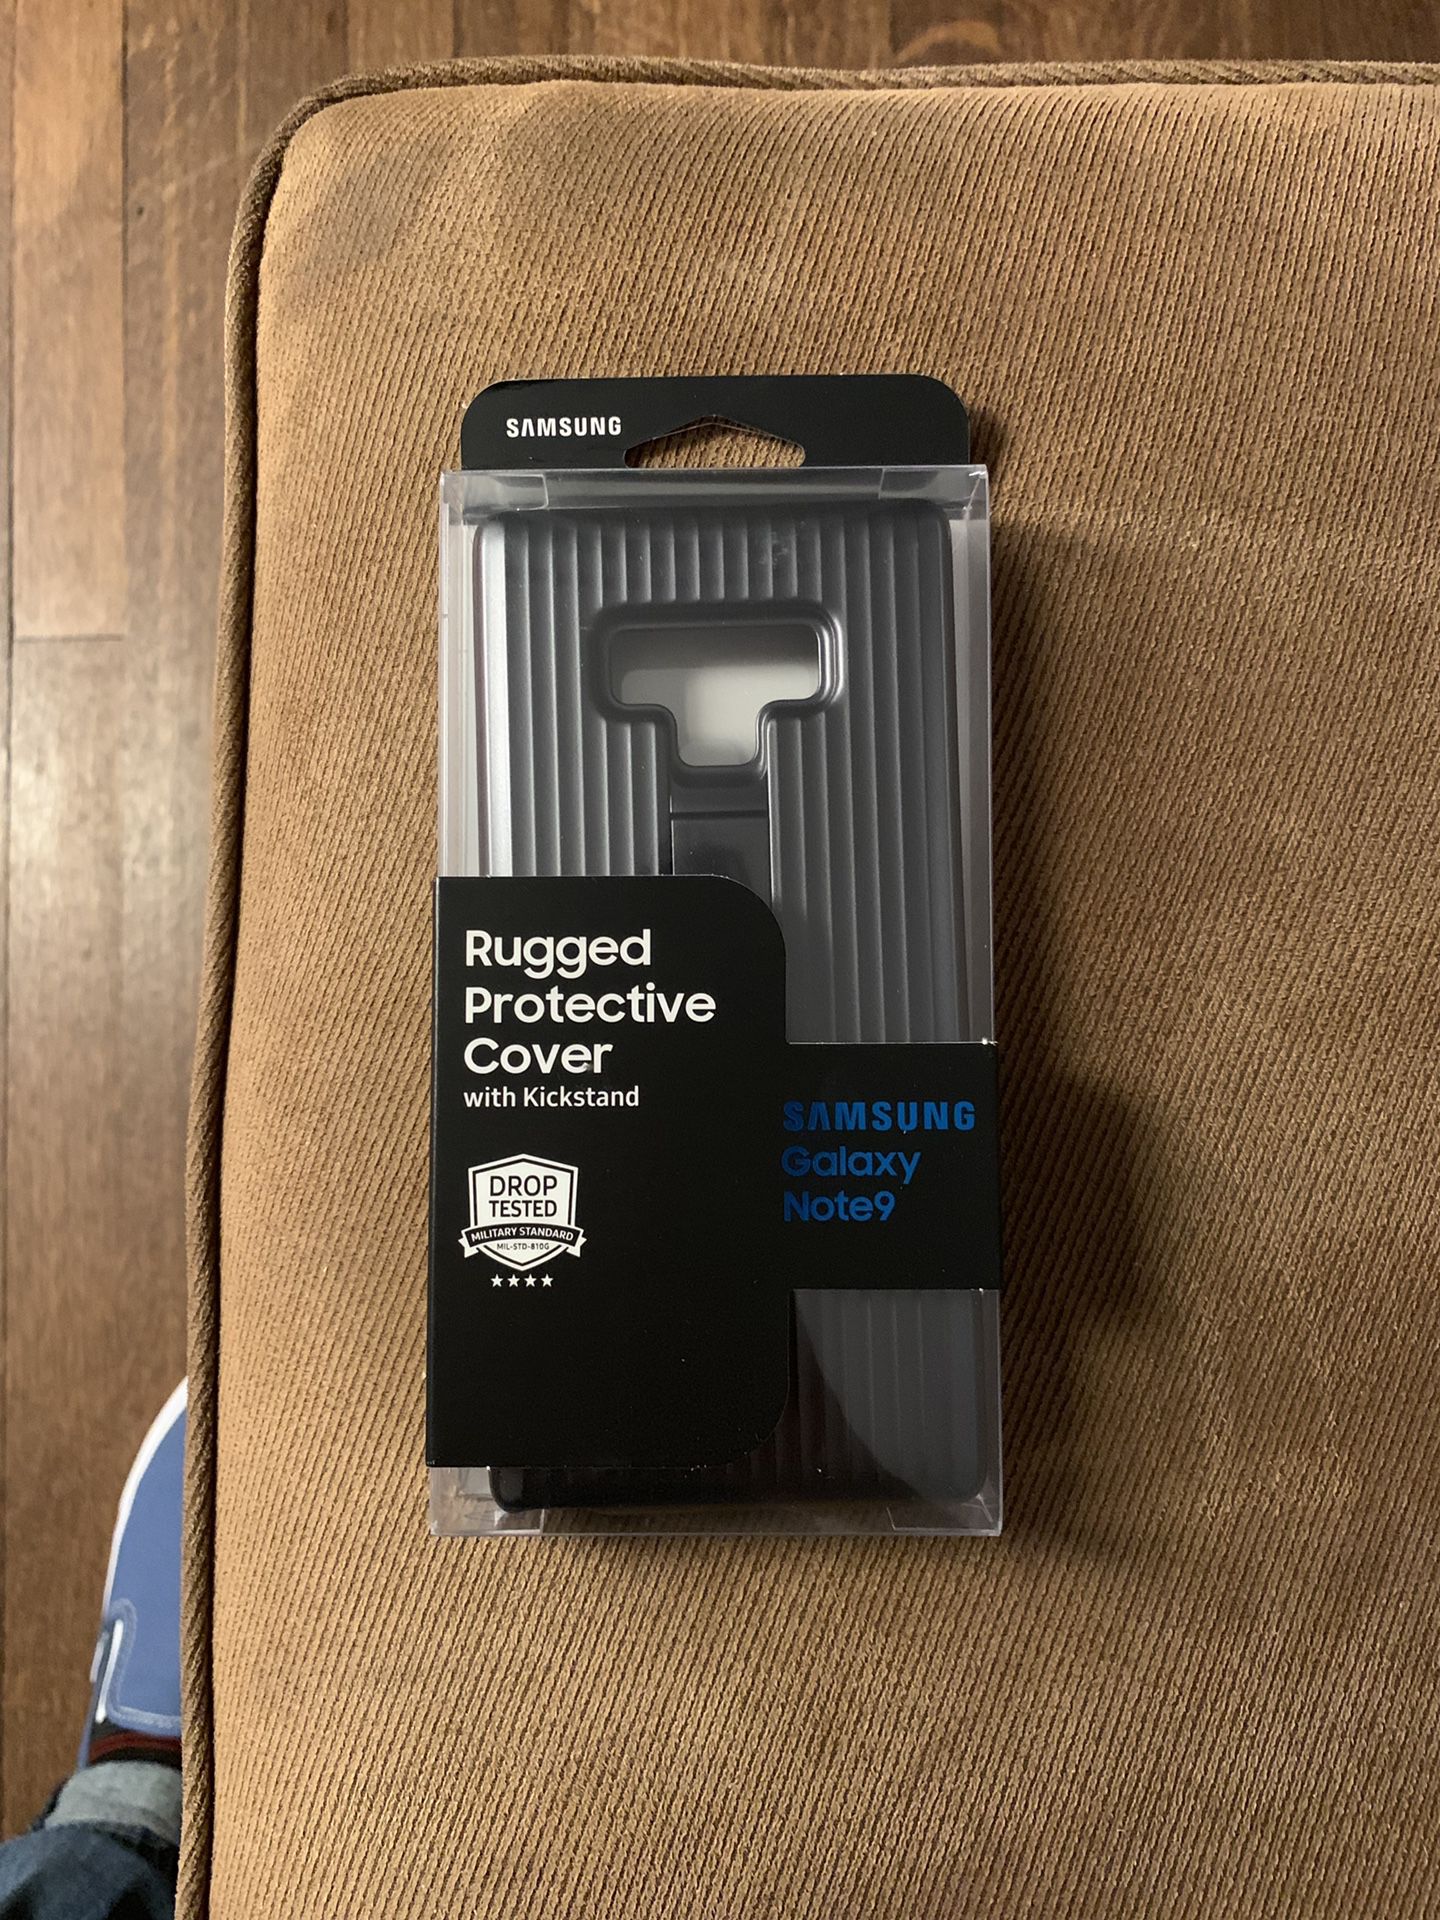 Samsung Note 9 case